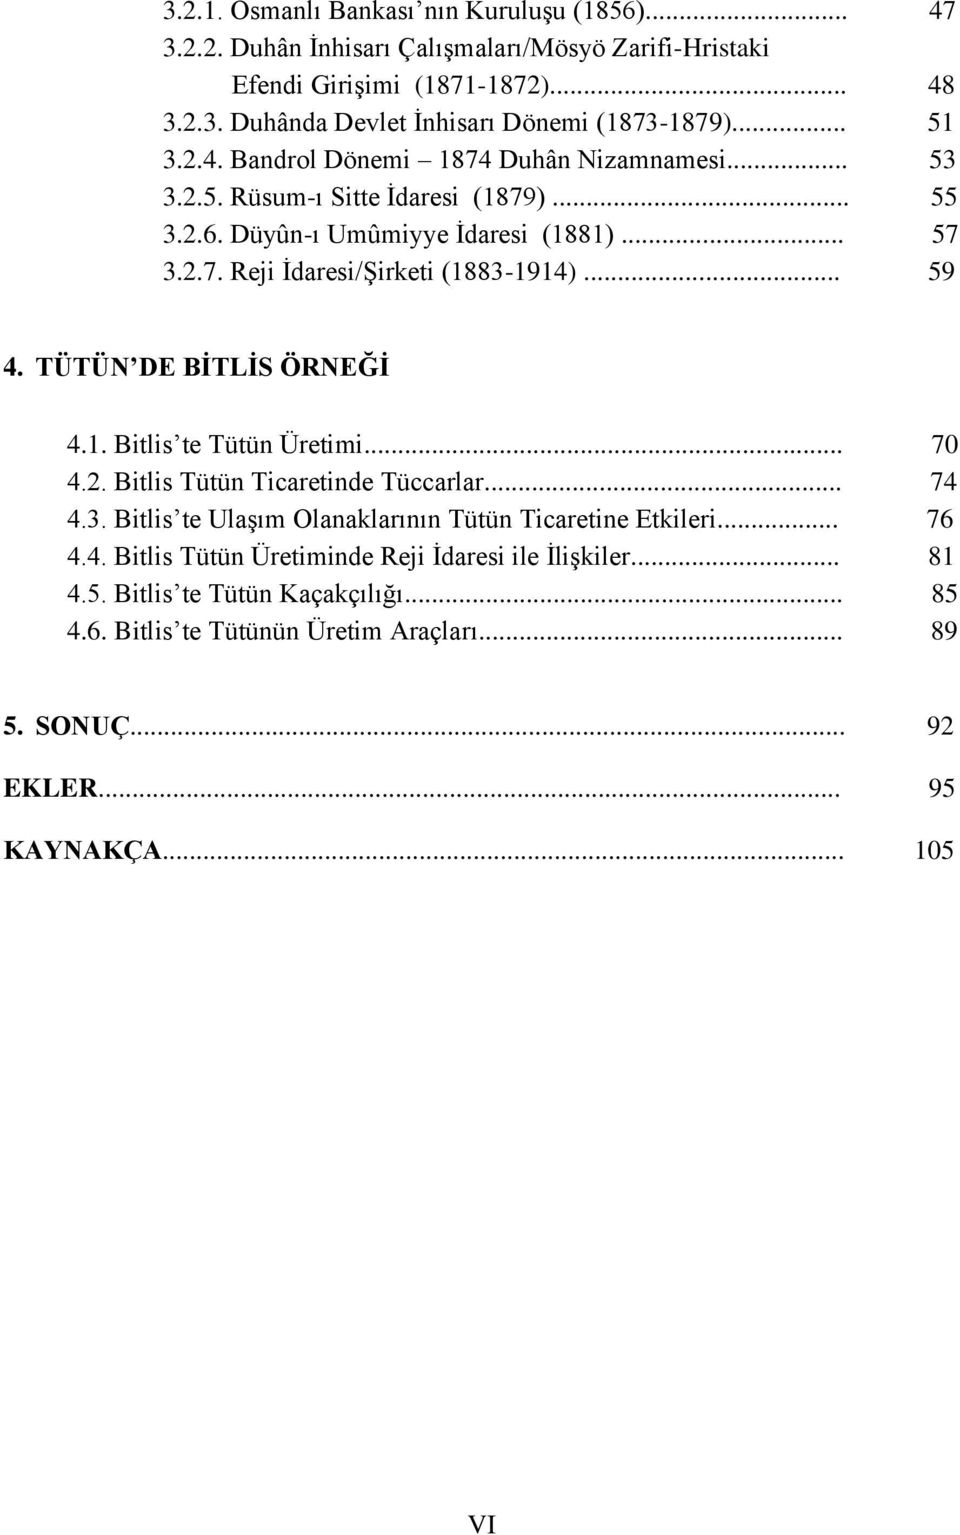 .. 59 4. TÜTÜN DE BİTLİS ÖRNEĞİ 4.1. Bitlis te Tütün Üretimi... 70 4.2. Bitlis Tütün Ticaretinde Tüccarlar... 74 4.3. Bitlis te Ulaşım Olanaklarının Tütün Ticaretine Etkileri... 76 4.4. Bitlis Tütün Üretiminde Reji İdaresi ile İlişkiler.